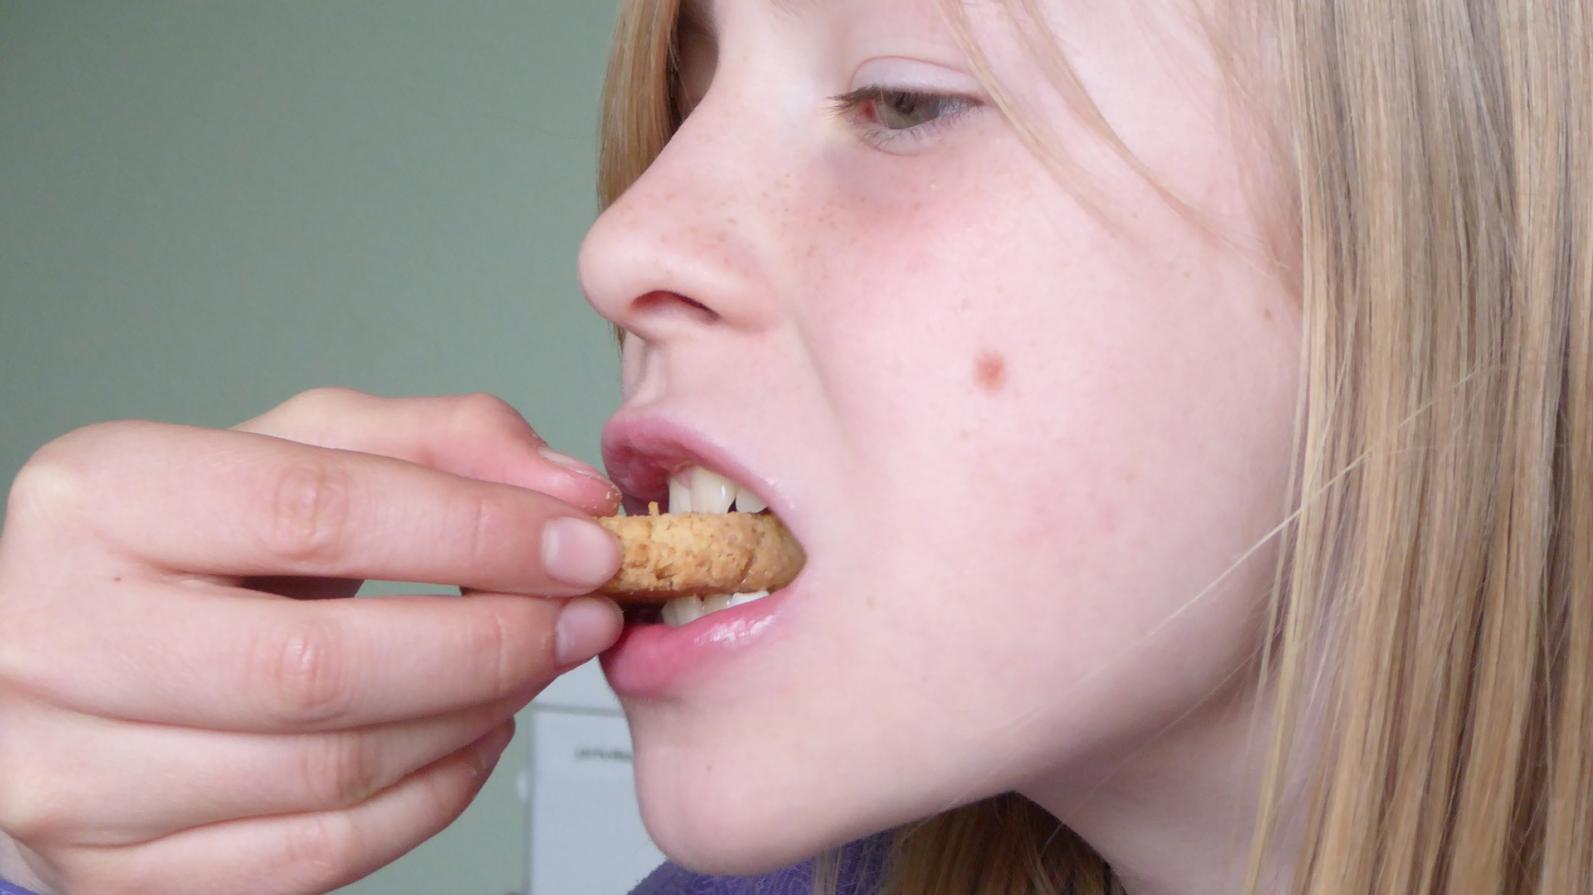 Além da falta de educação, comer de boca aberta pode fazer muito mal à saúde